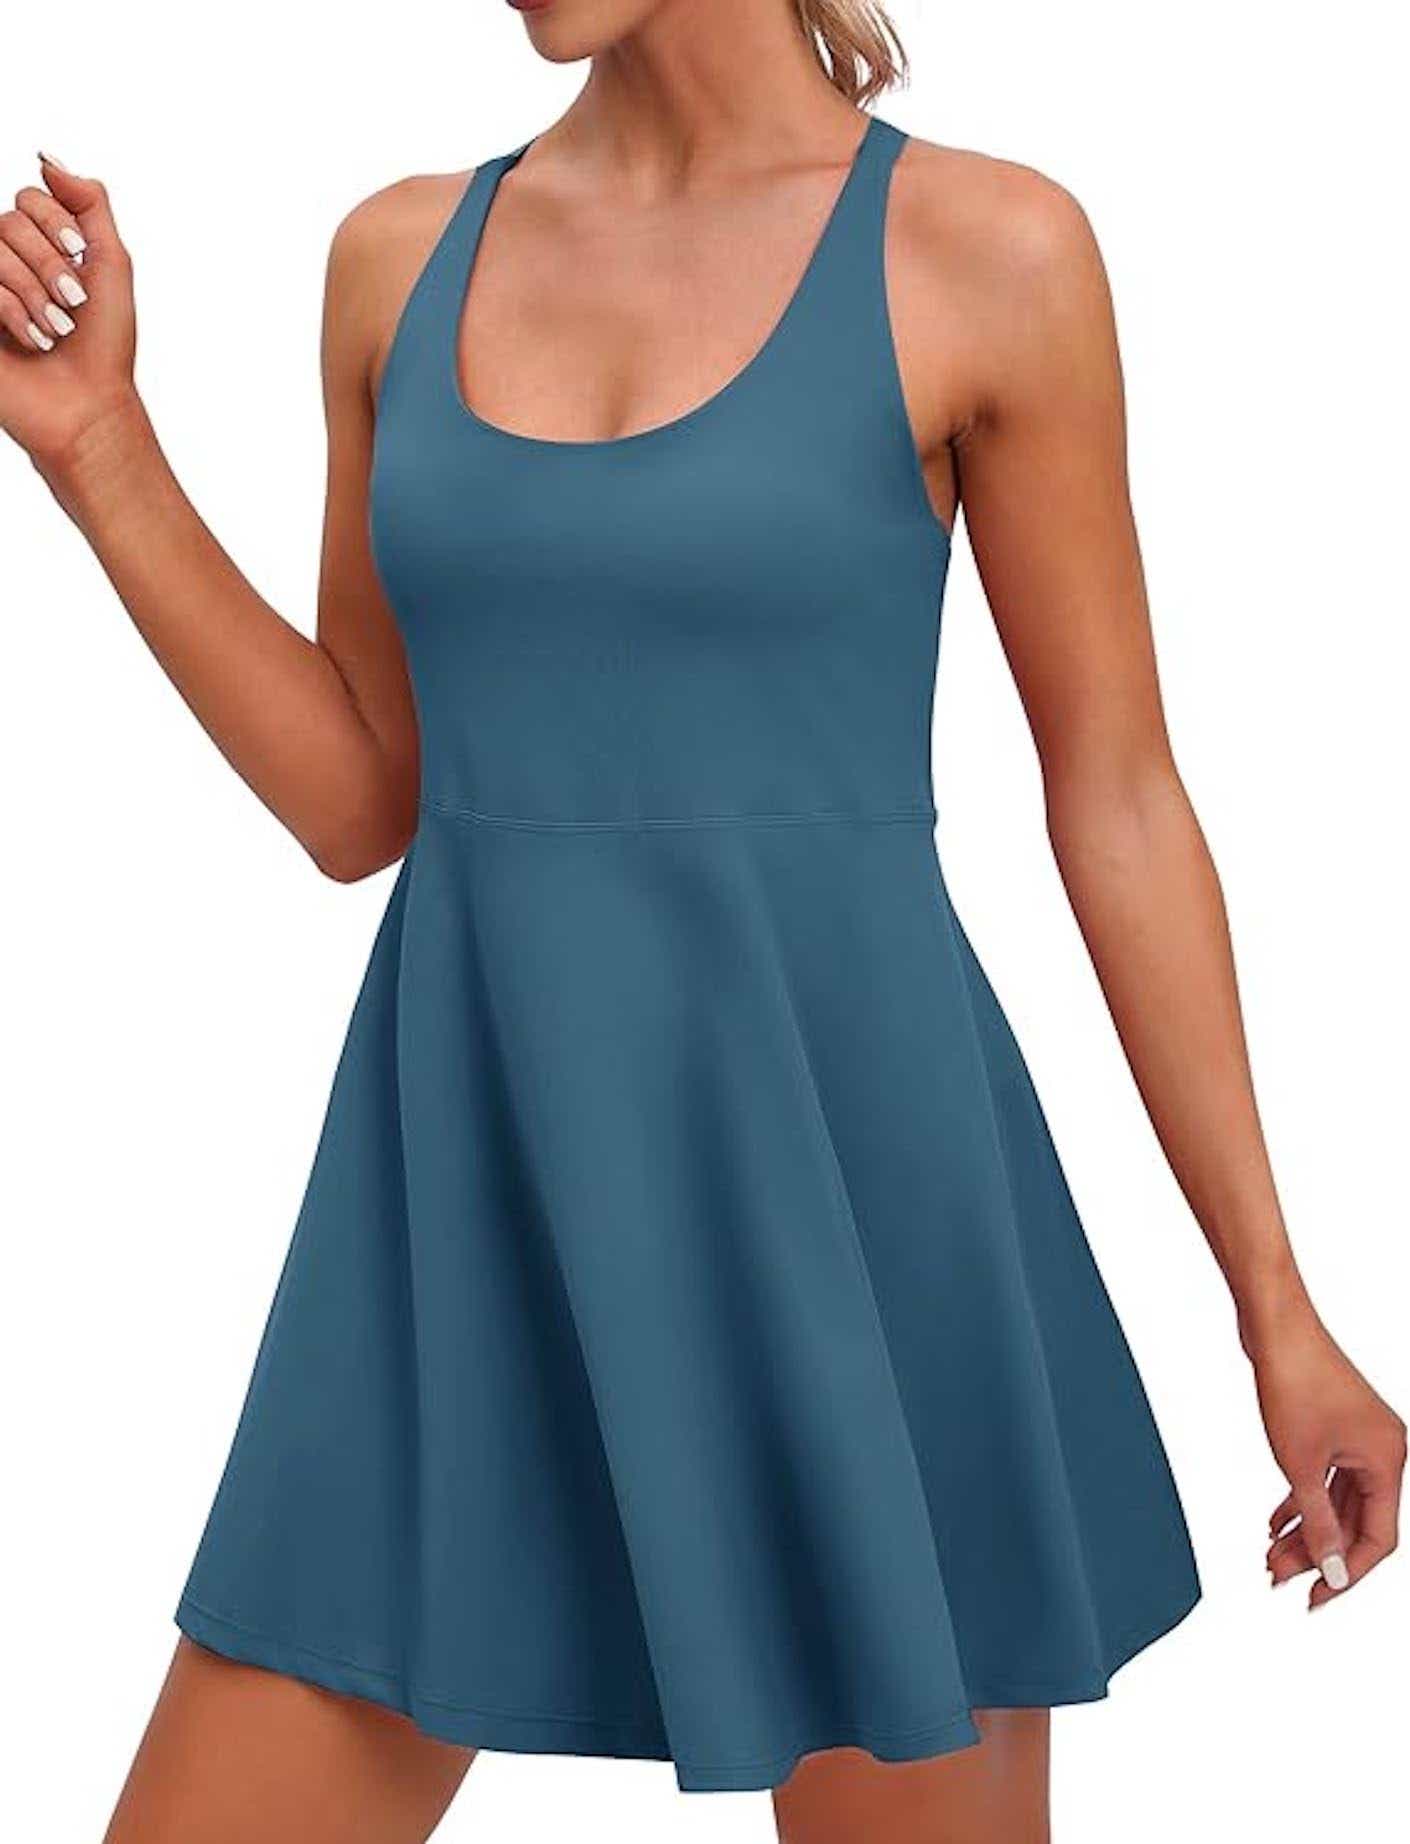 A blue tennis dress.